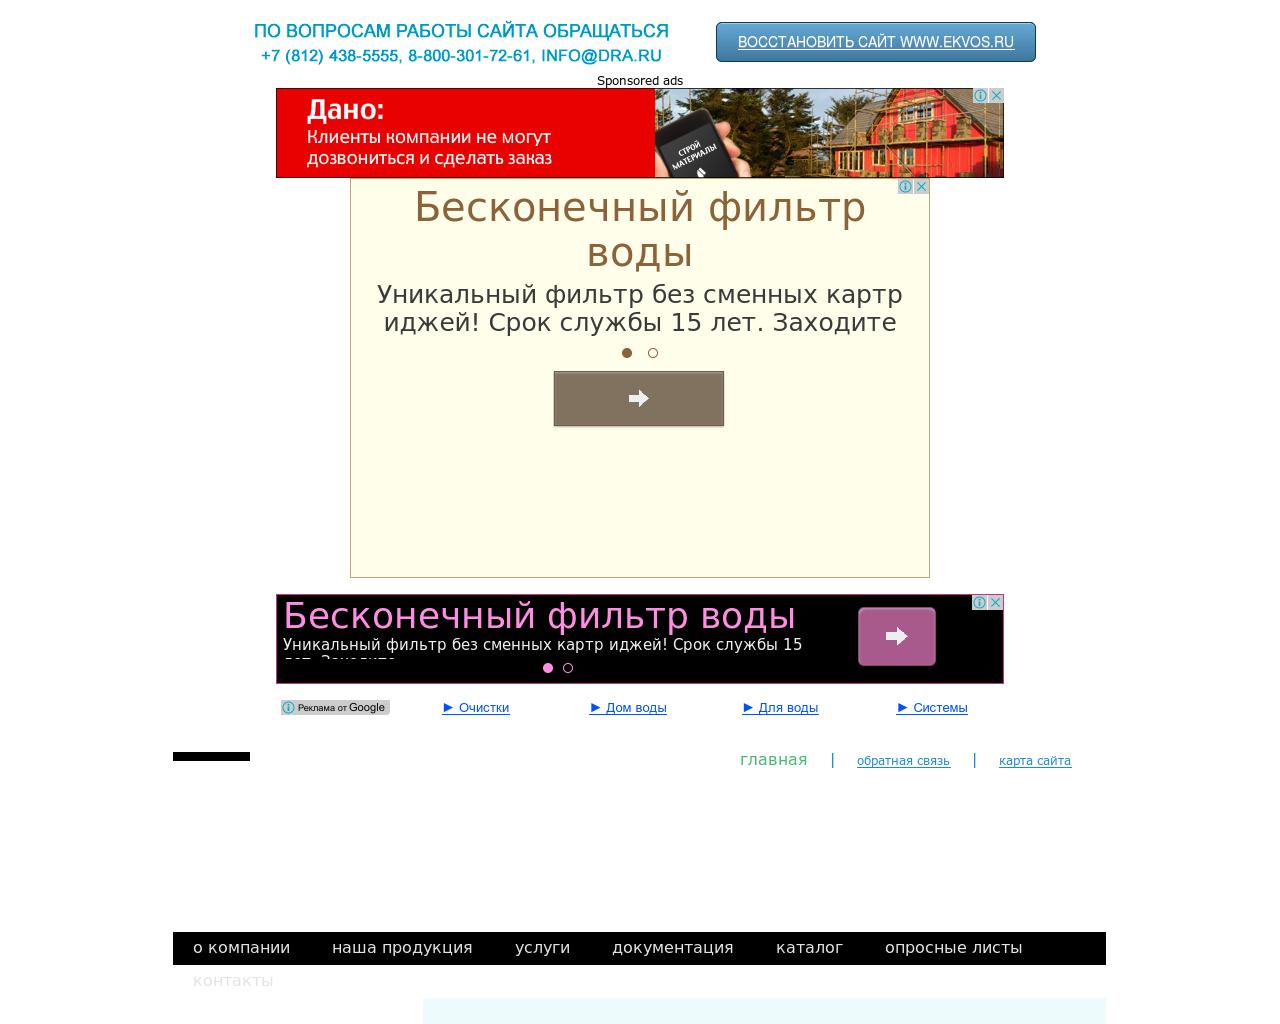 Изображение сайта ekvos.ru в разрешении 1280x1024